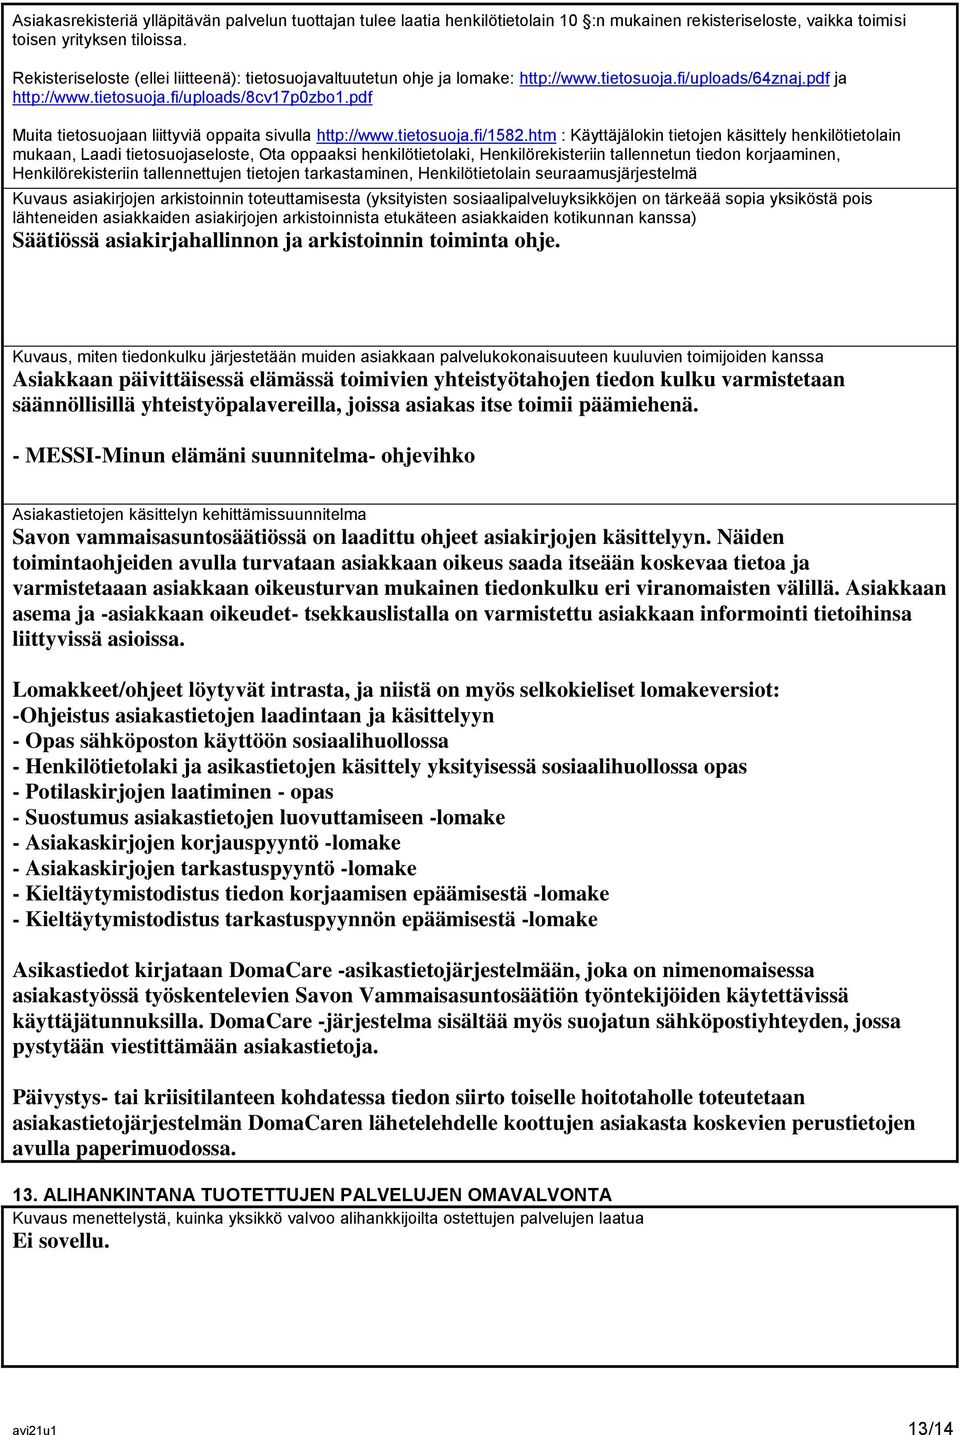 pdf Muita tietosuojaan liittyviä oppaita sivulla http://www.tietosuoja.fi/1582.